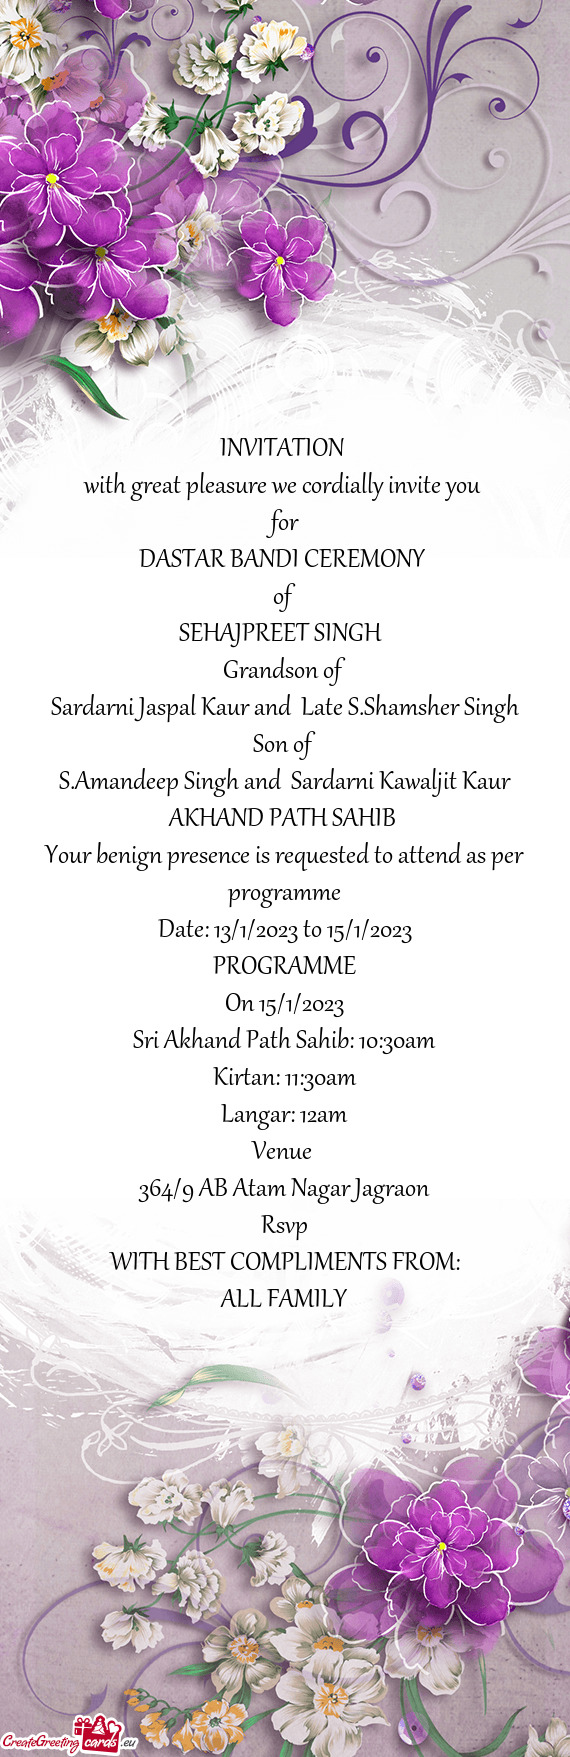 S.Amandeep Singh and Sardarni Kawaljit Kaur